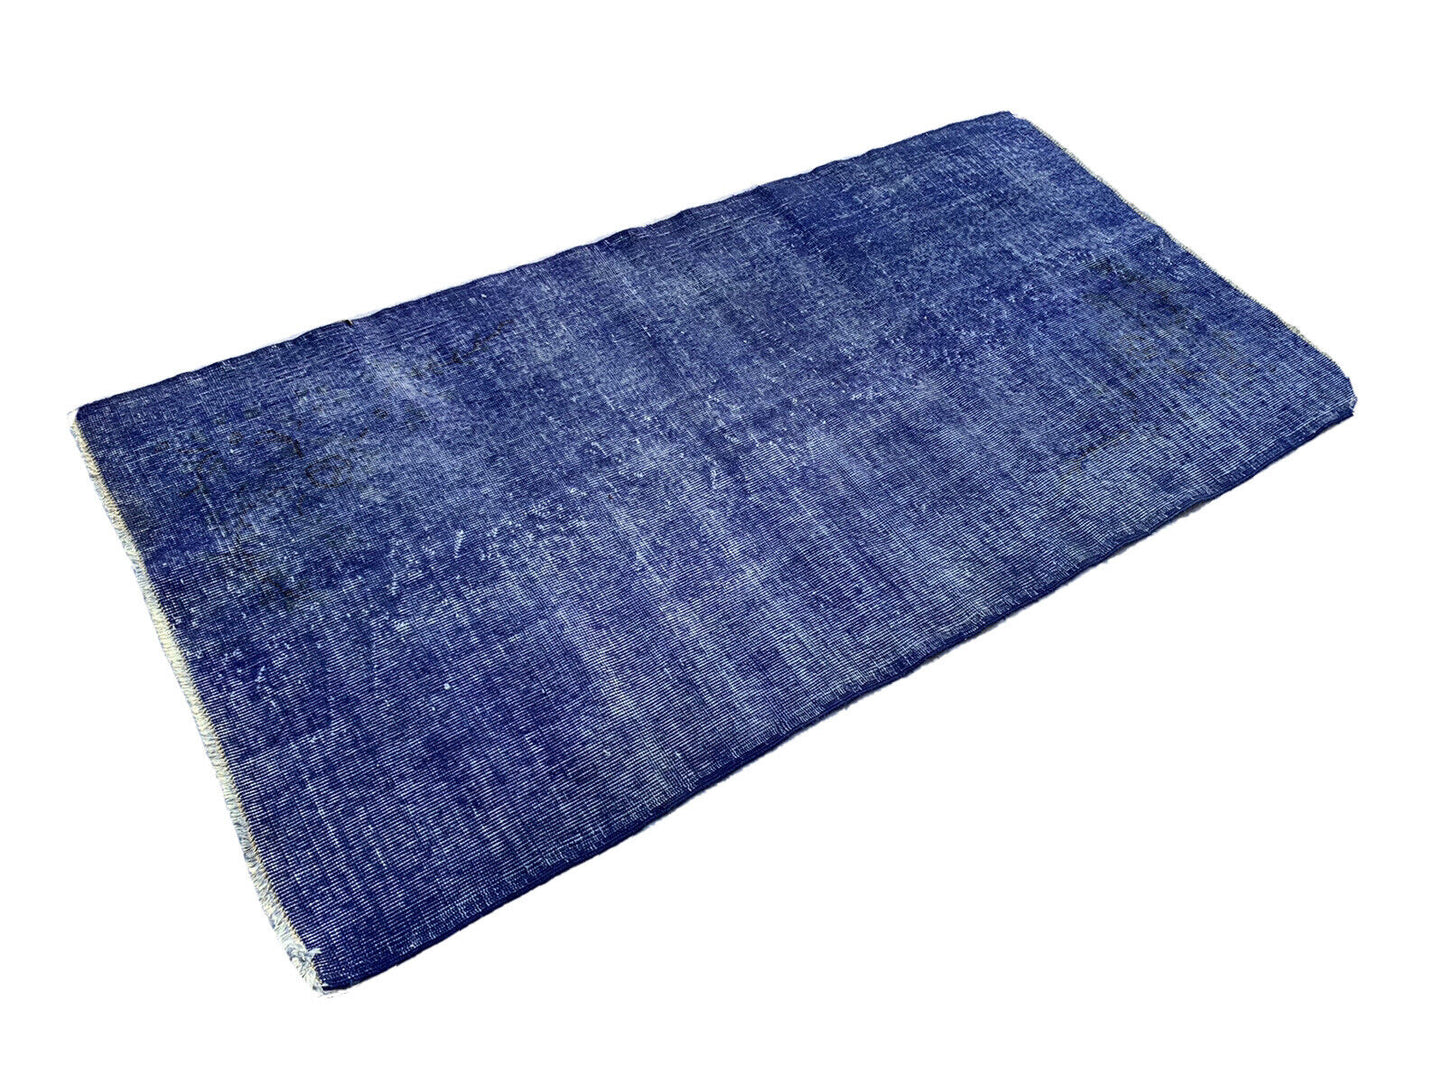 Distressed Overdyed Türkischer Teppich 195 x100 cm Vintage Wolle Blau Medium